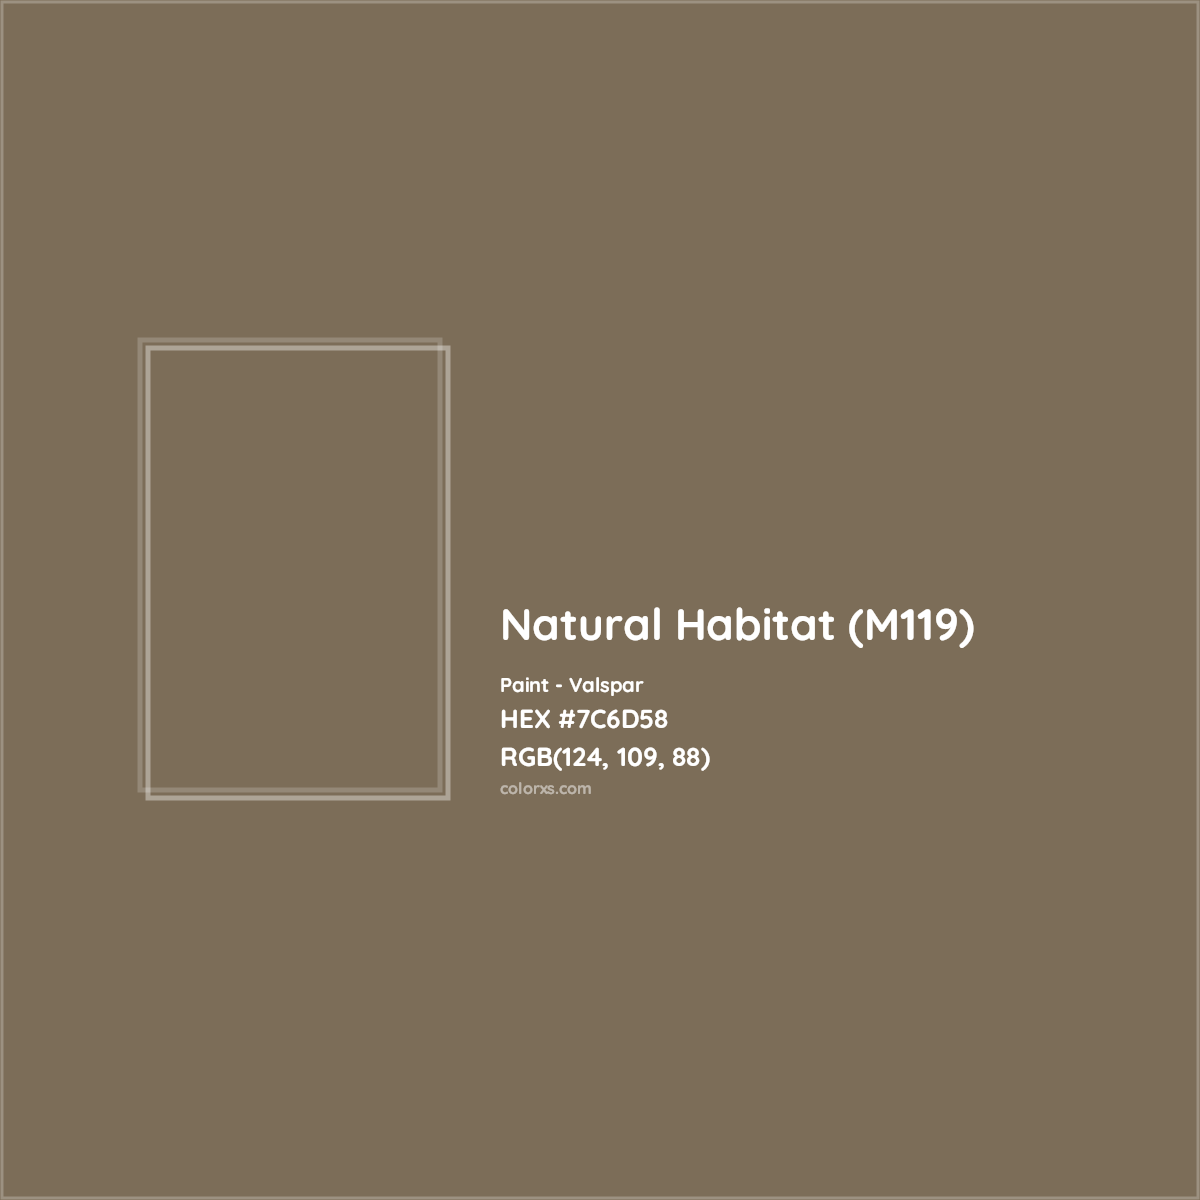 HEX #7C6D58 Natural Habitat (M119) Paint Valspar - Color Code